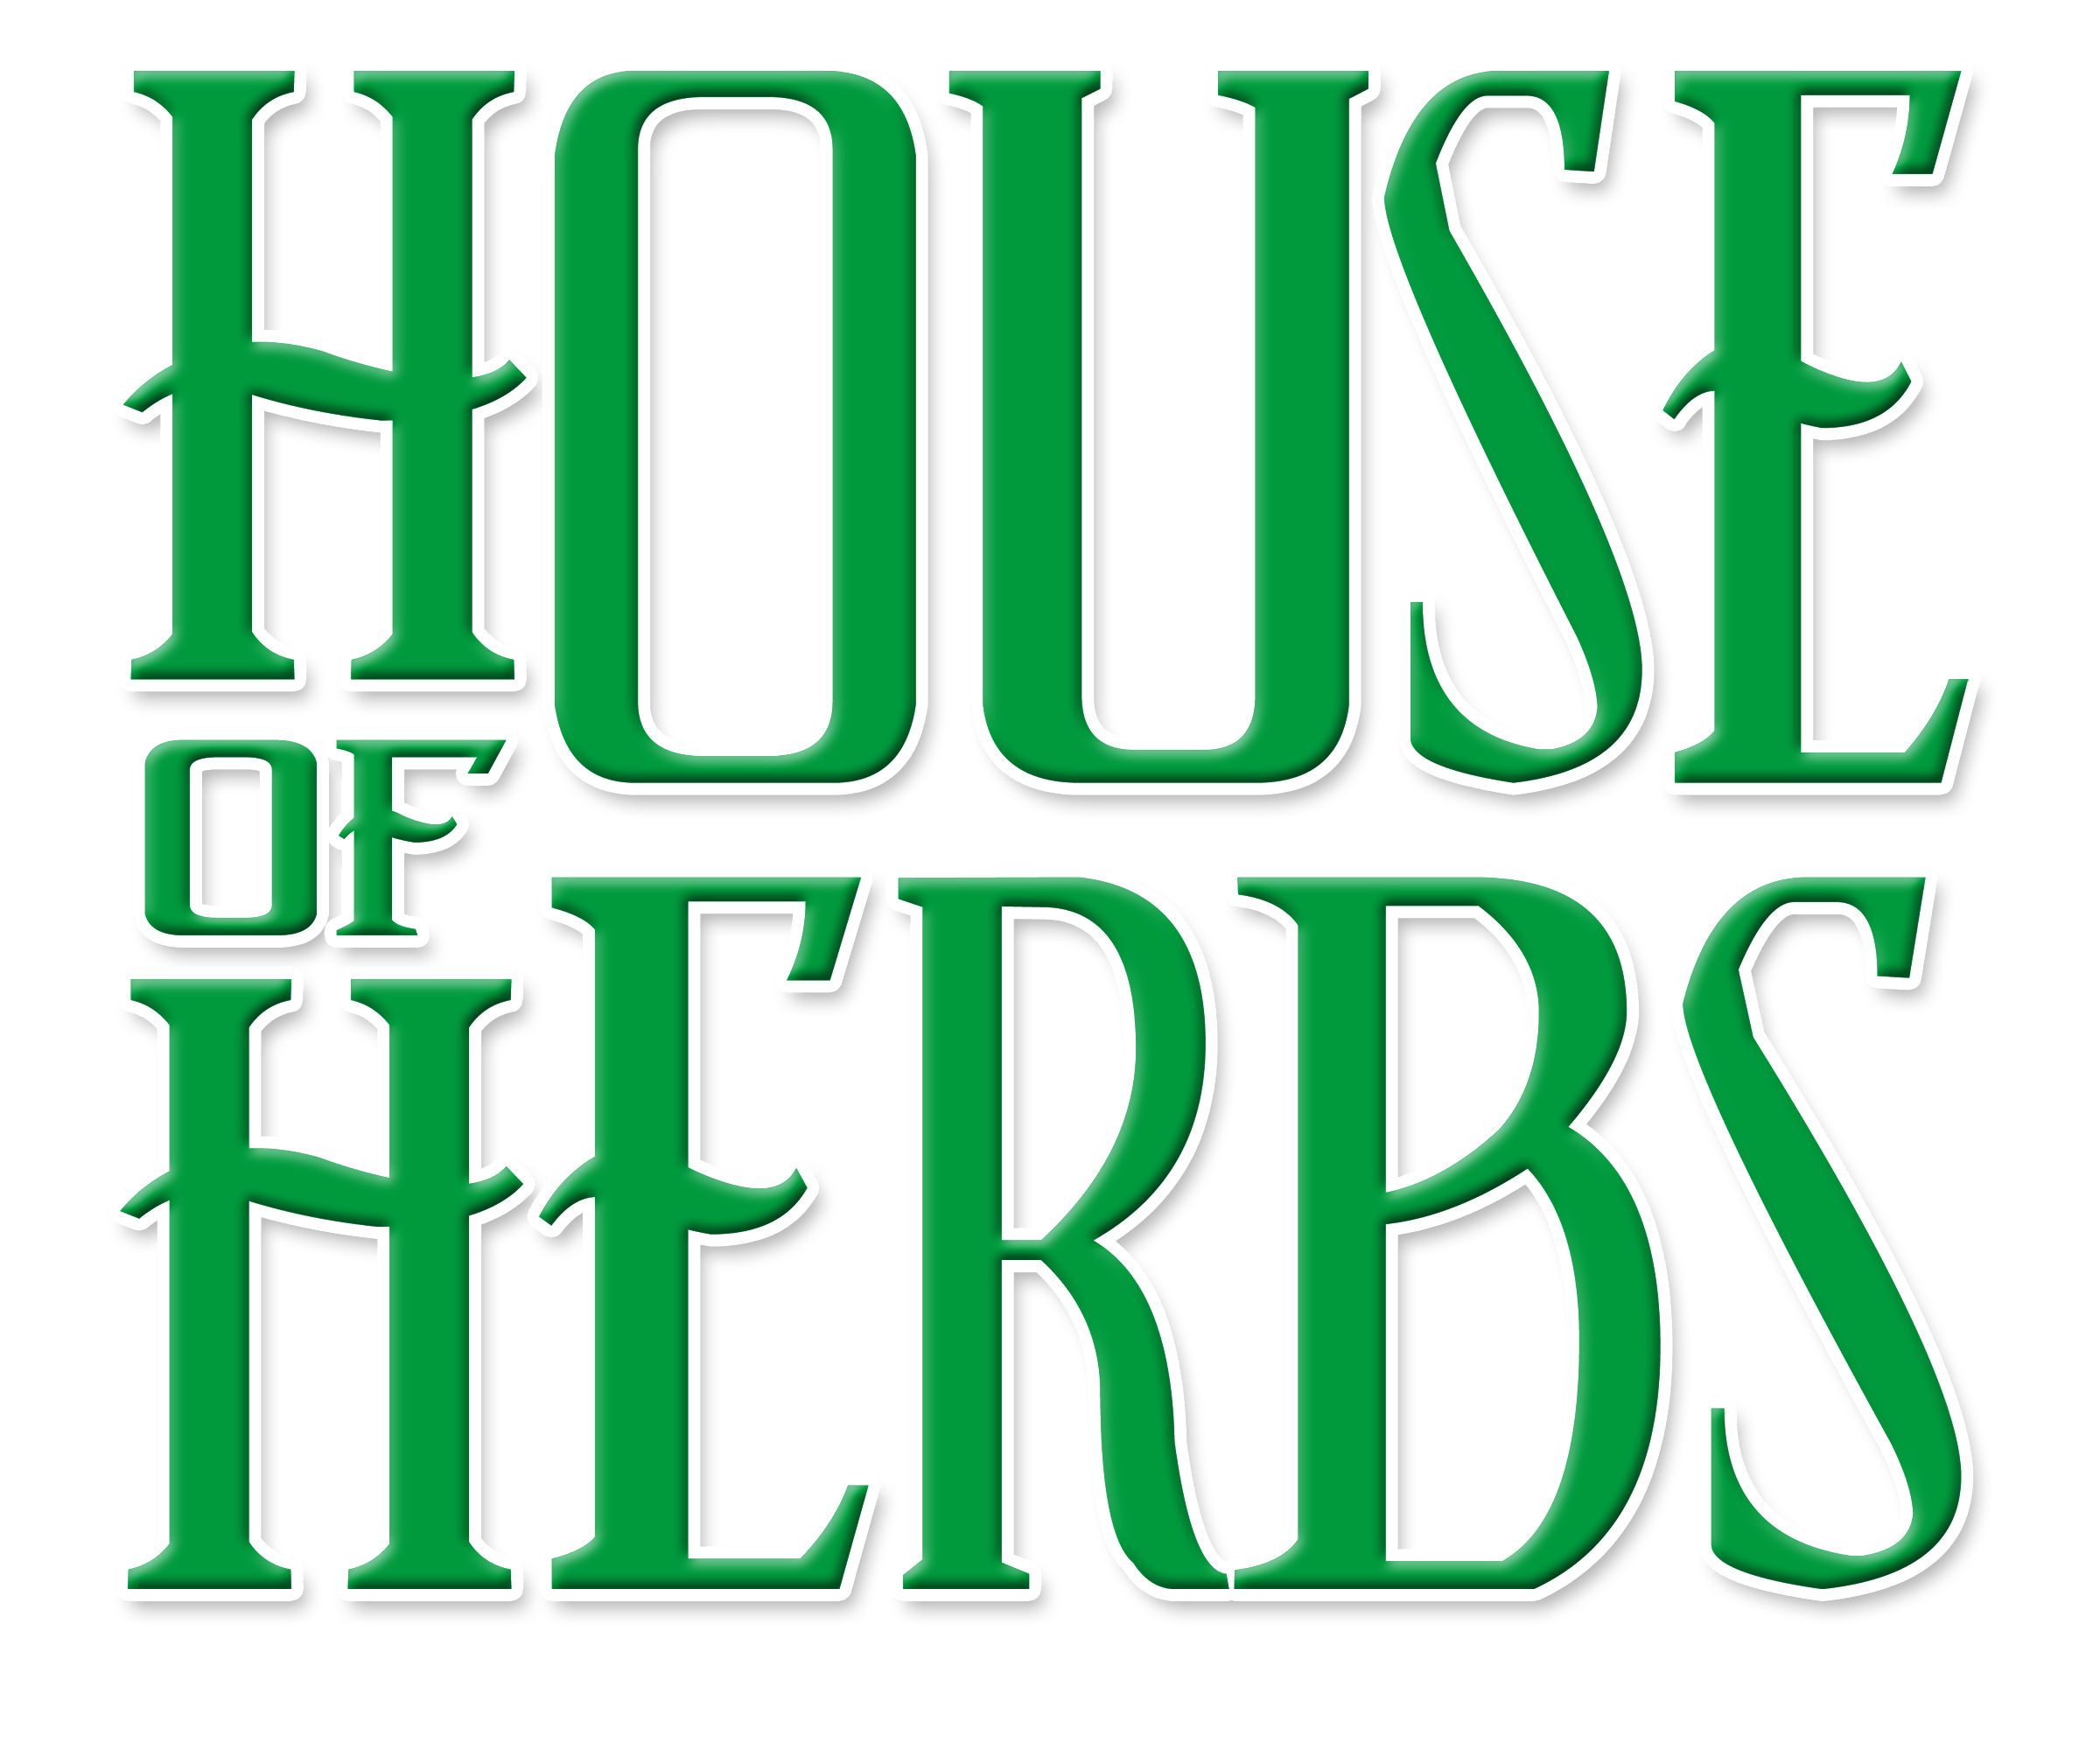 Diablo OG (House Of Herbs)